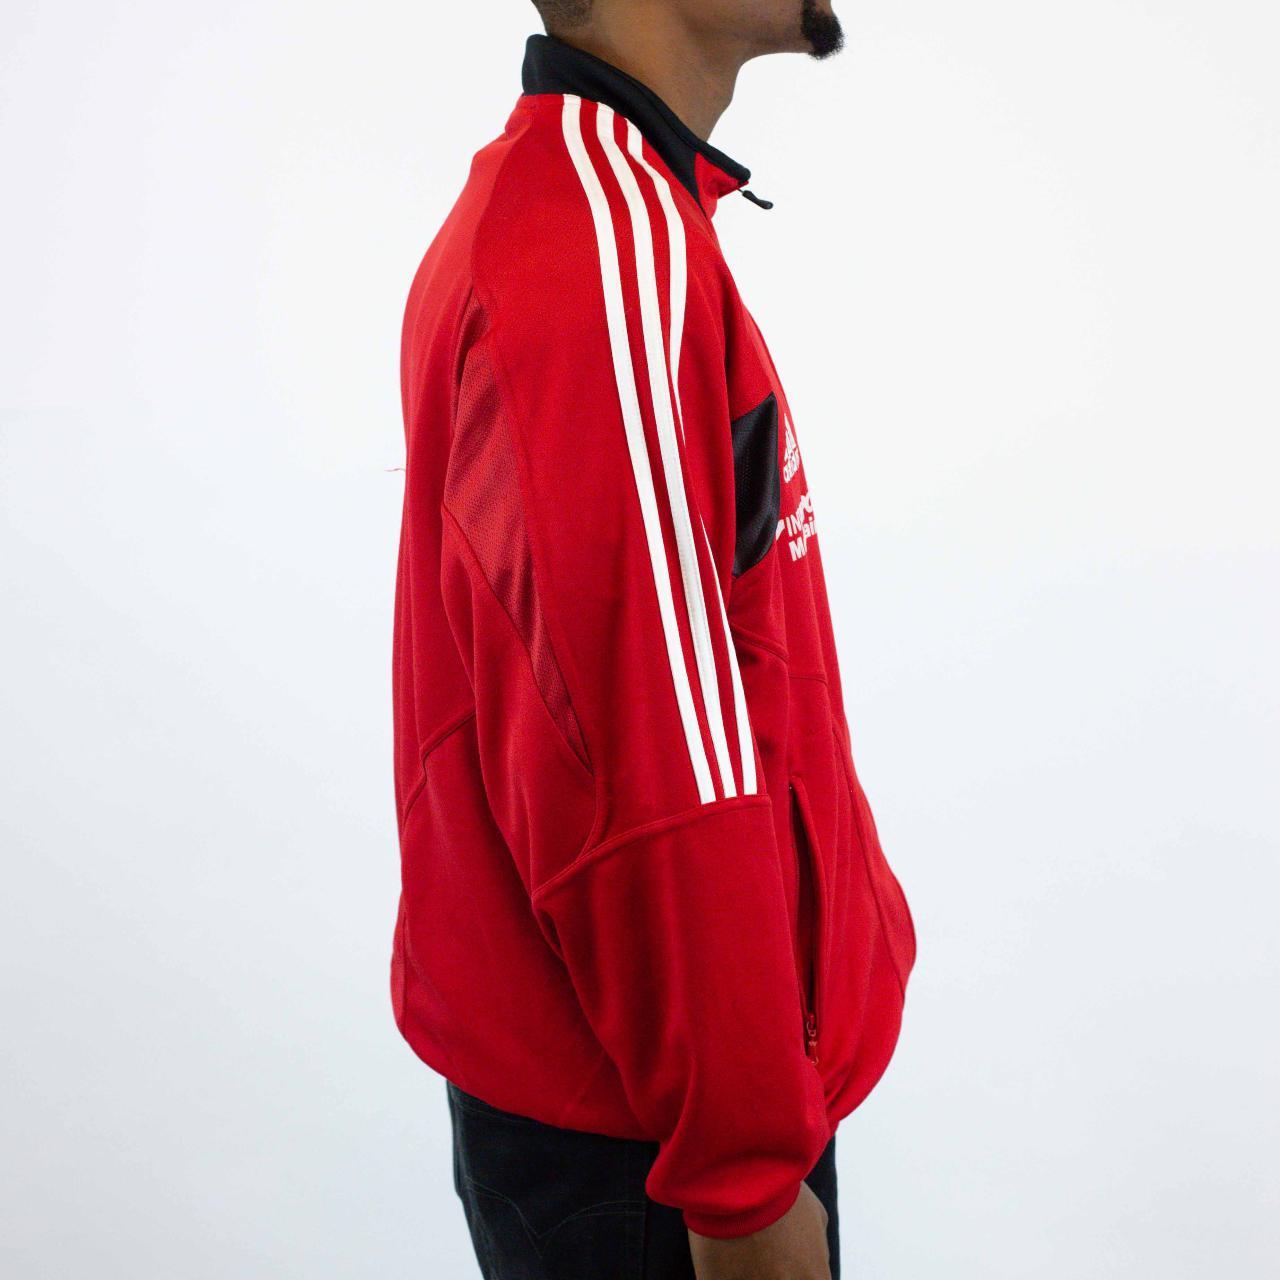 Vintage long sleeve Adidas Sports Jacket in Red,... - Depop